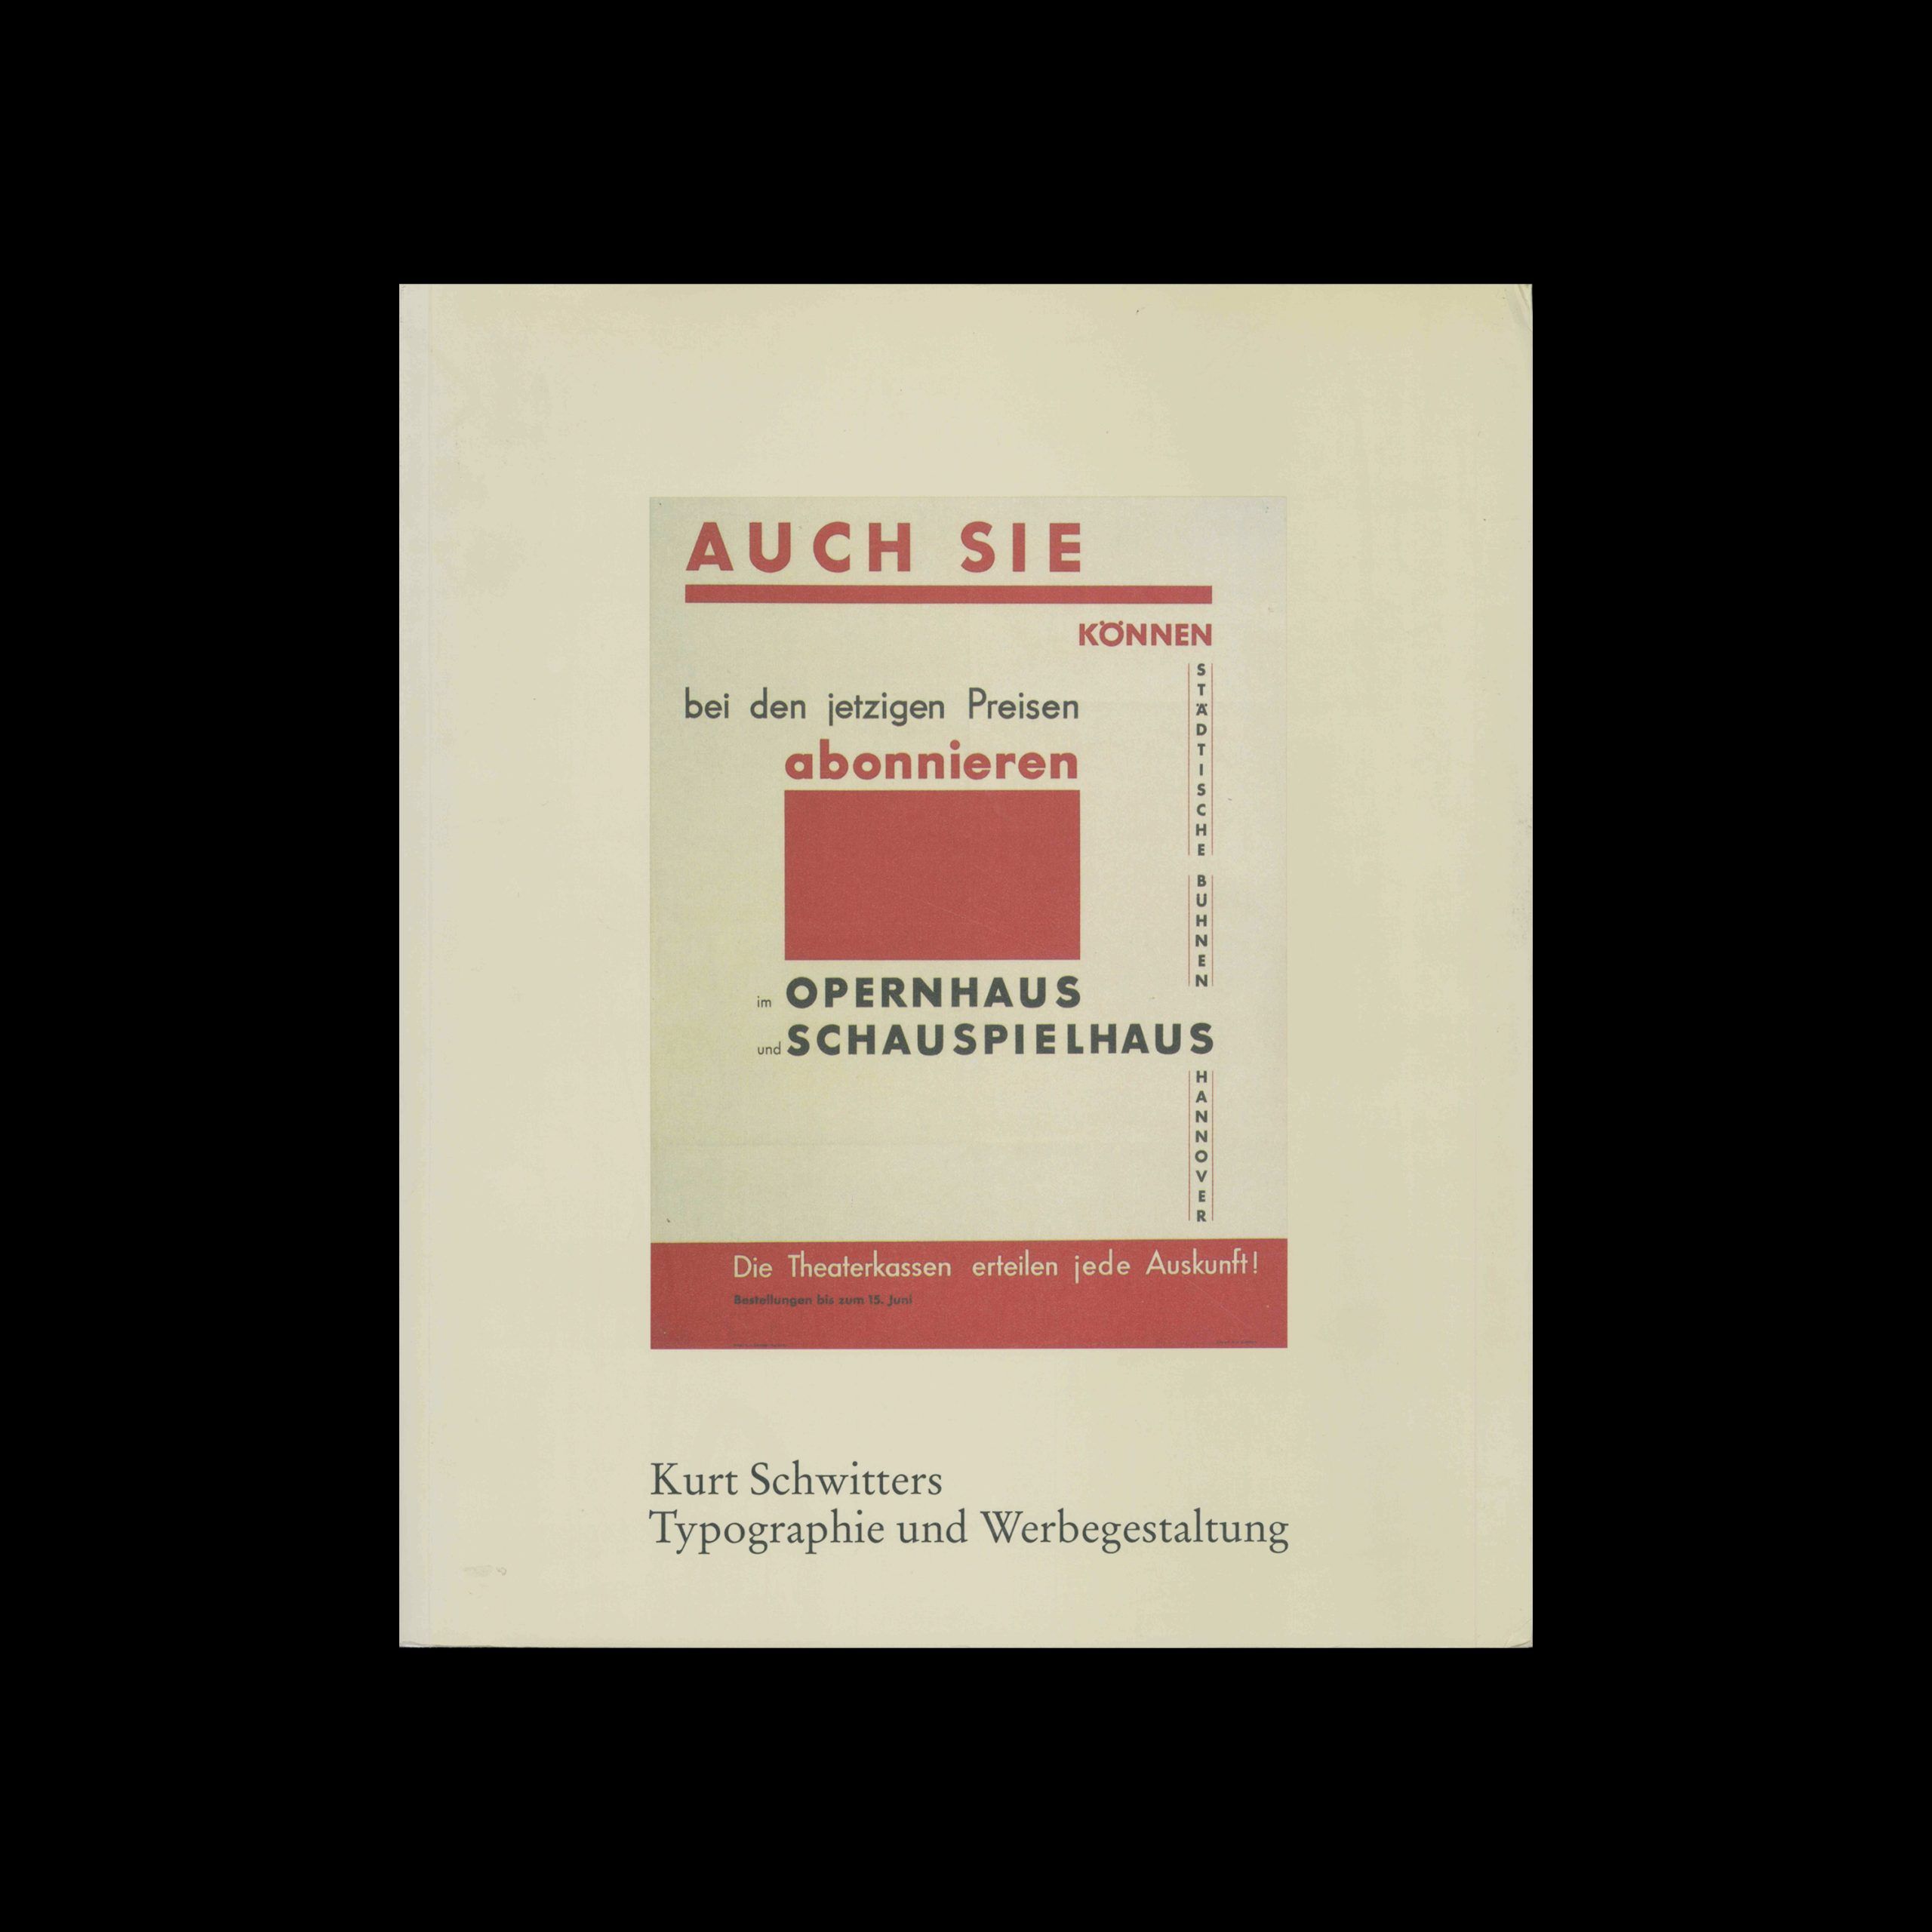 Kurt Schwitters, Typographie und Werbegestaltung, 1990